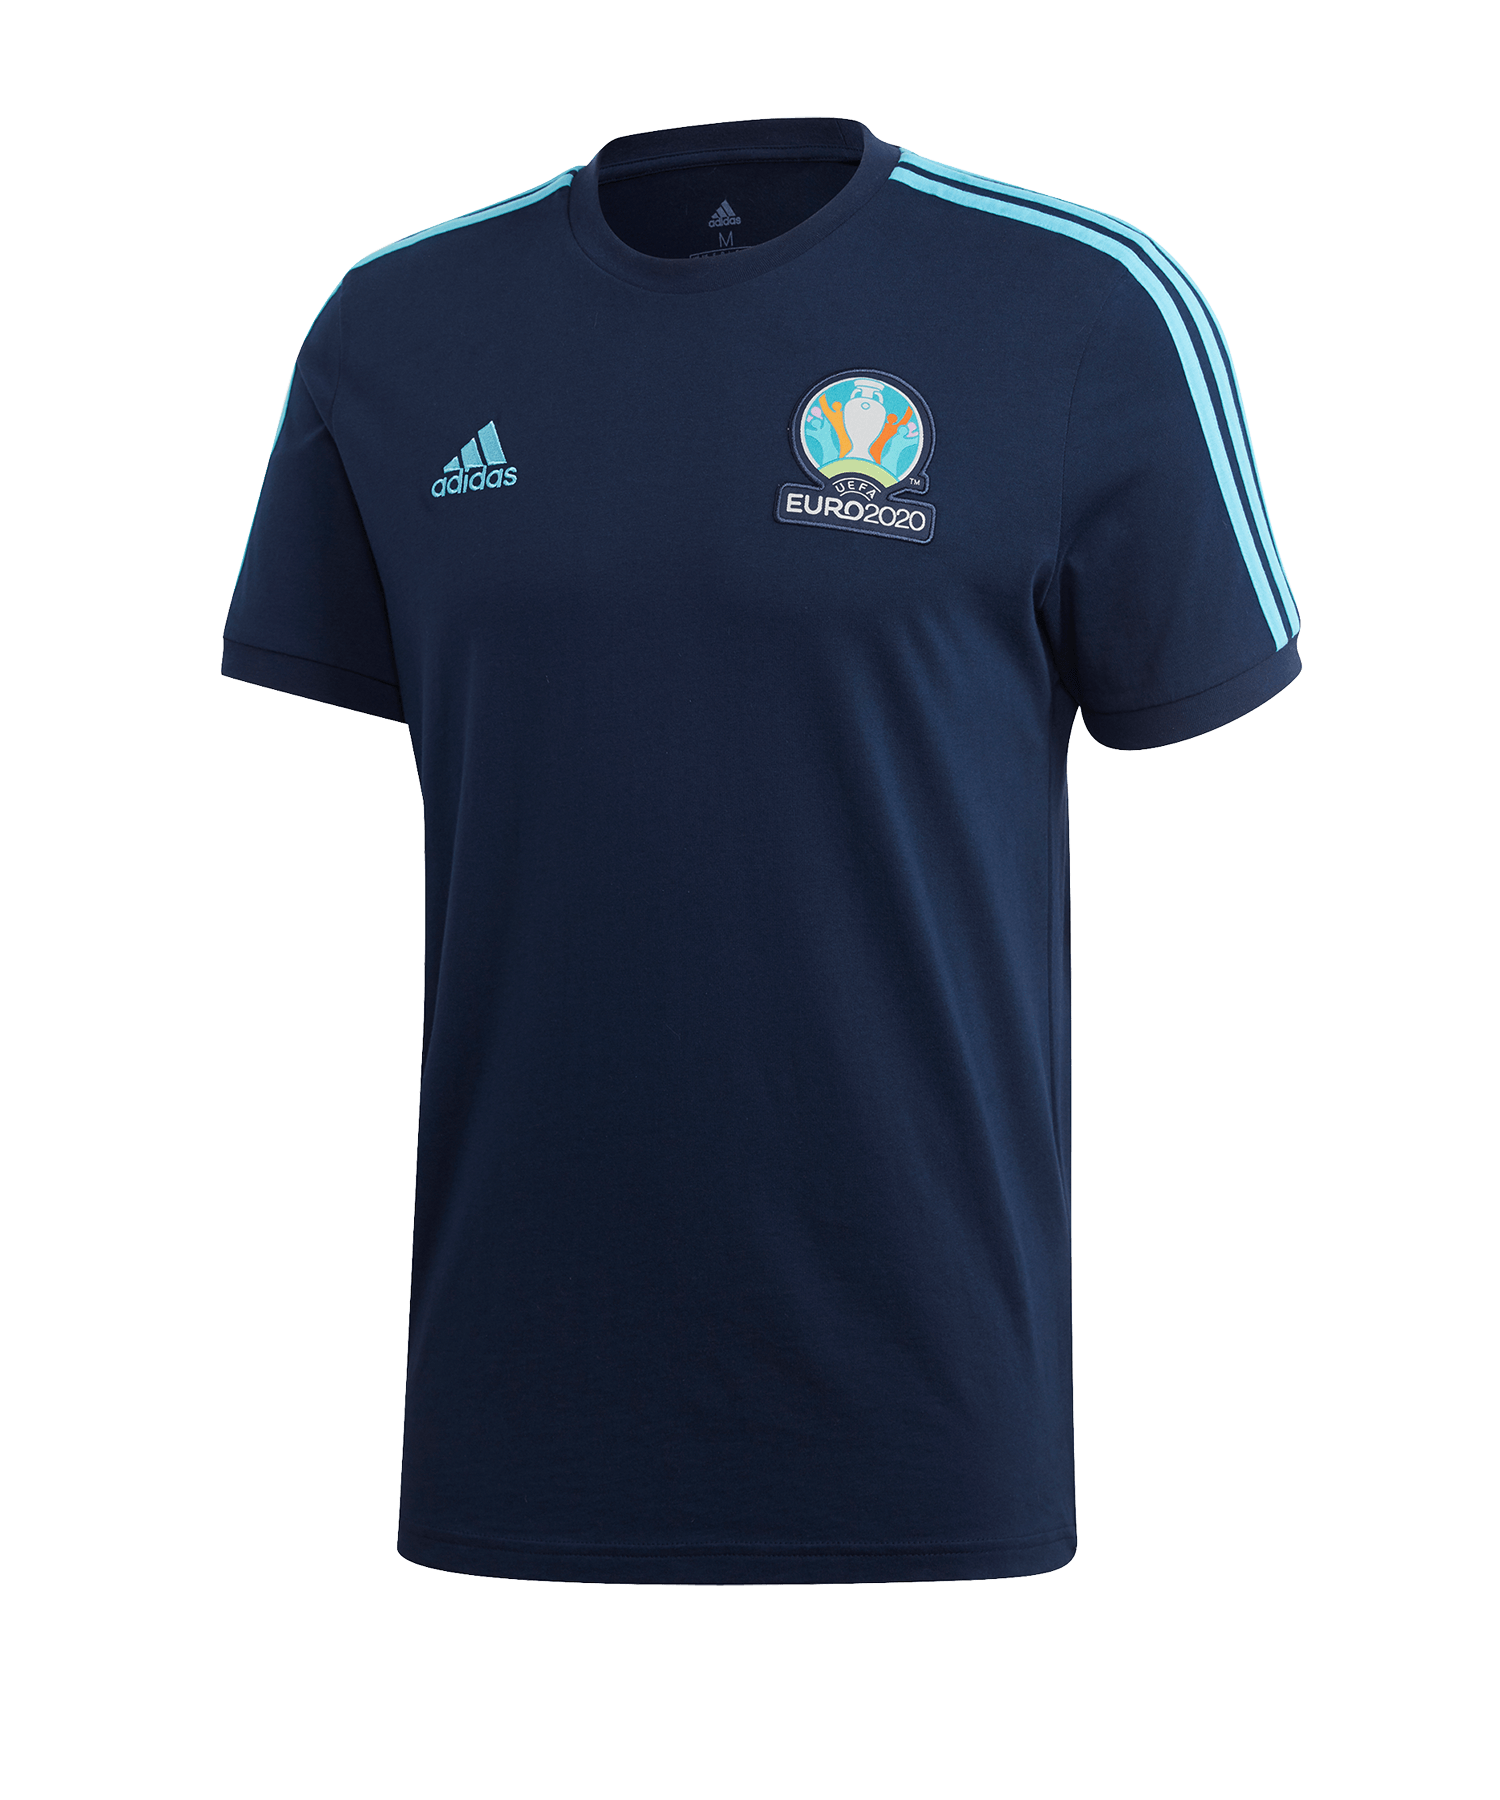 adidas EM 2020 T-Shirt Blue